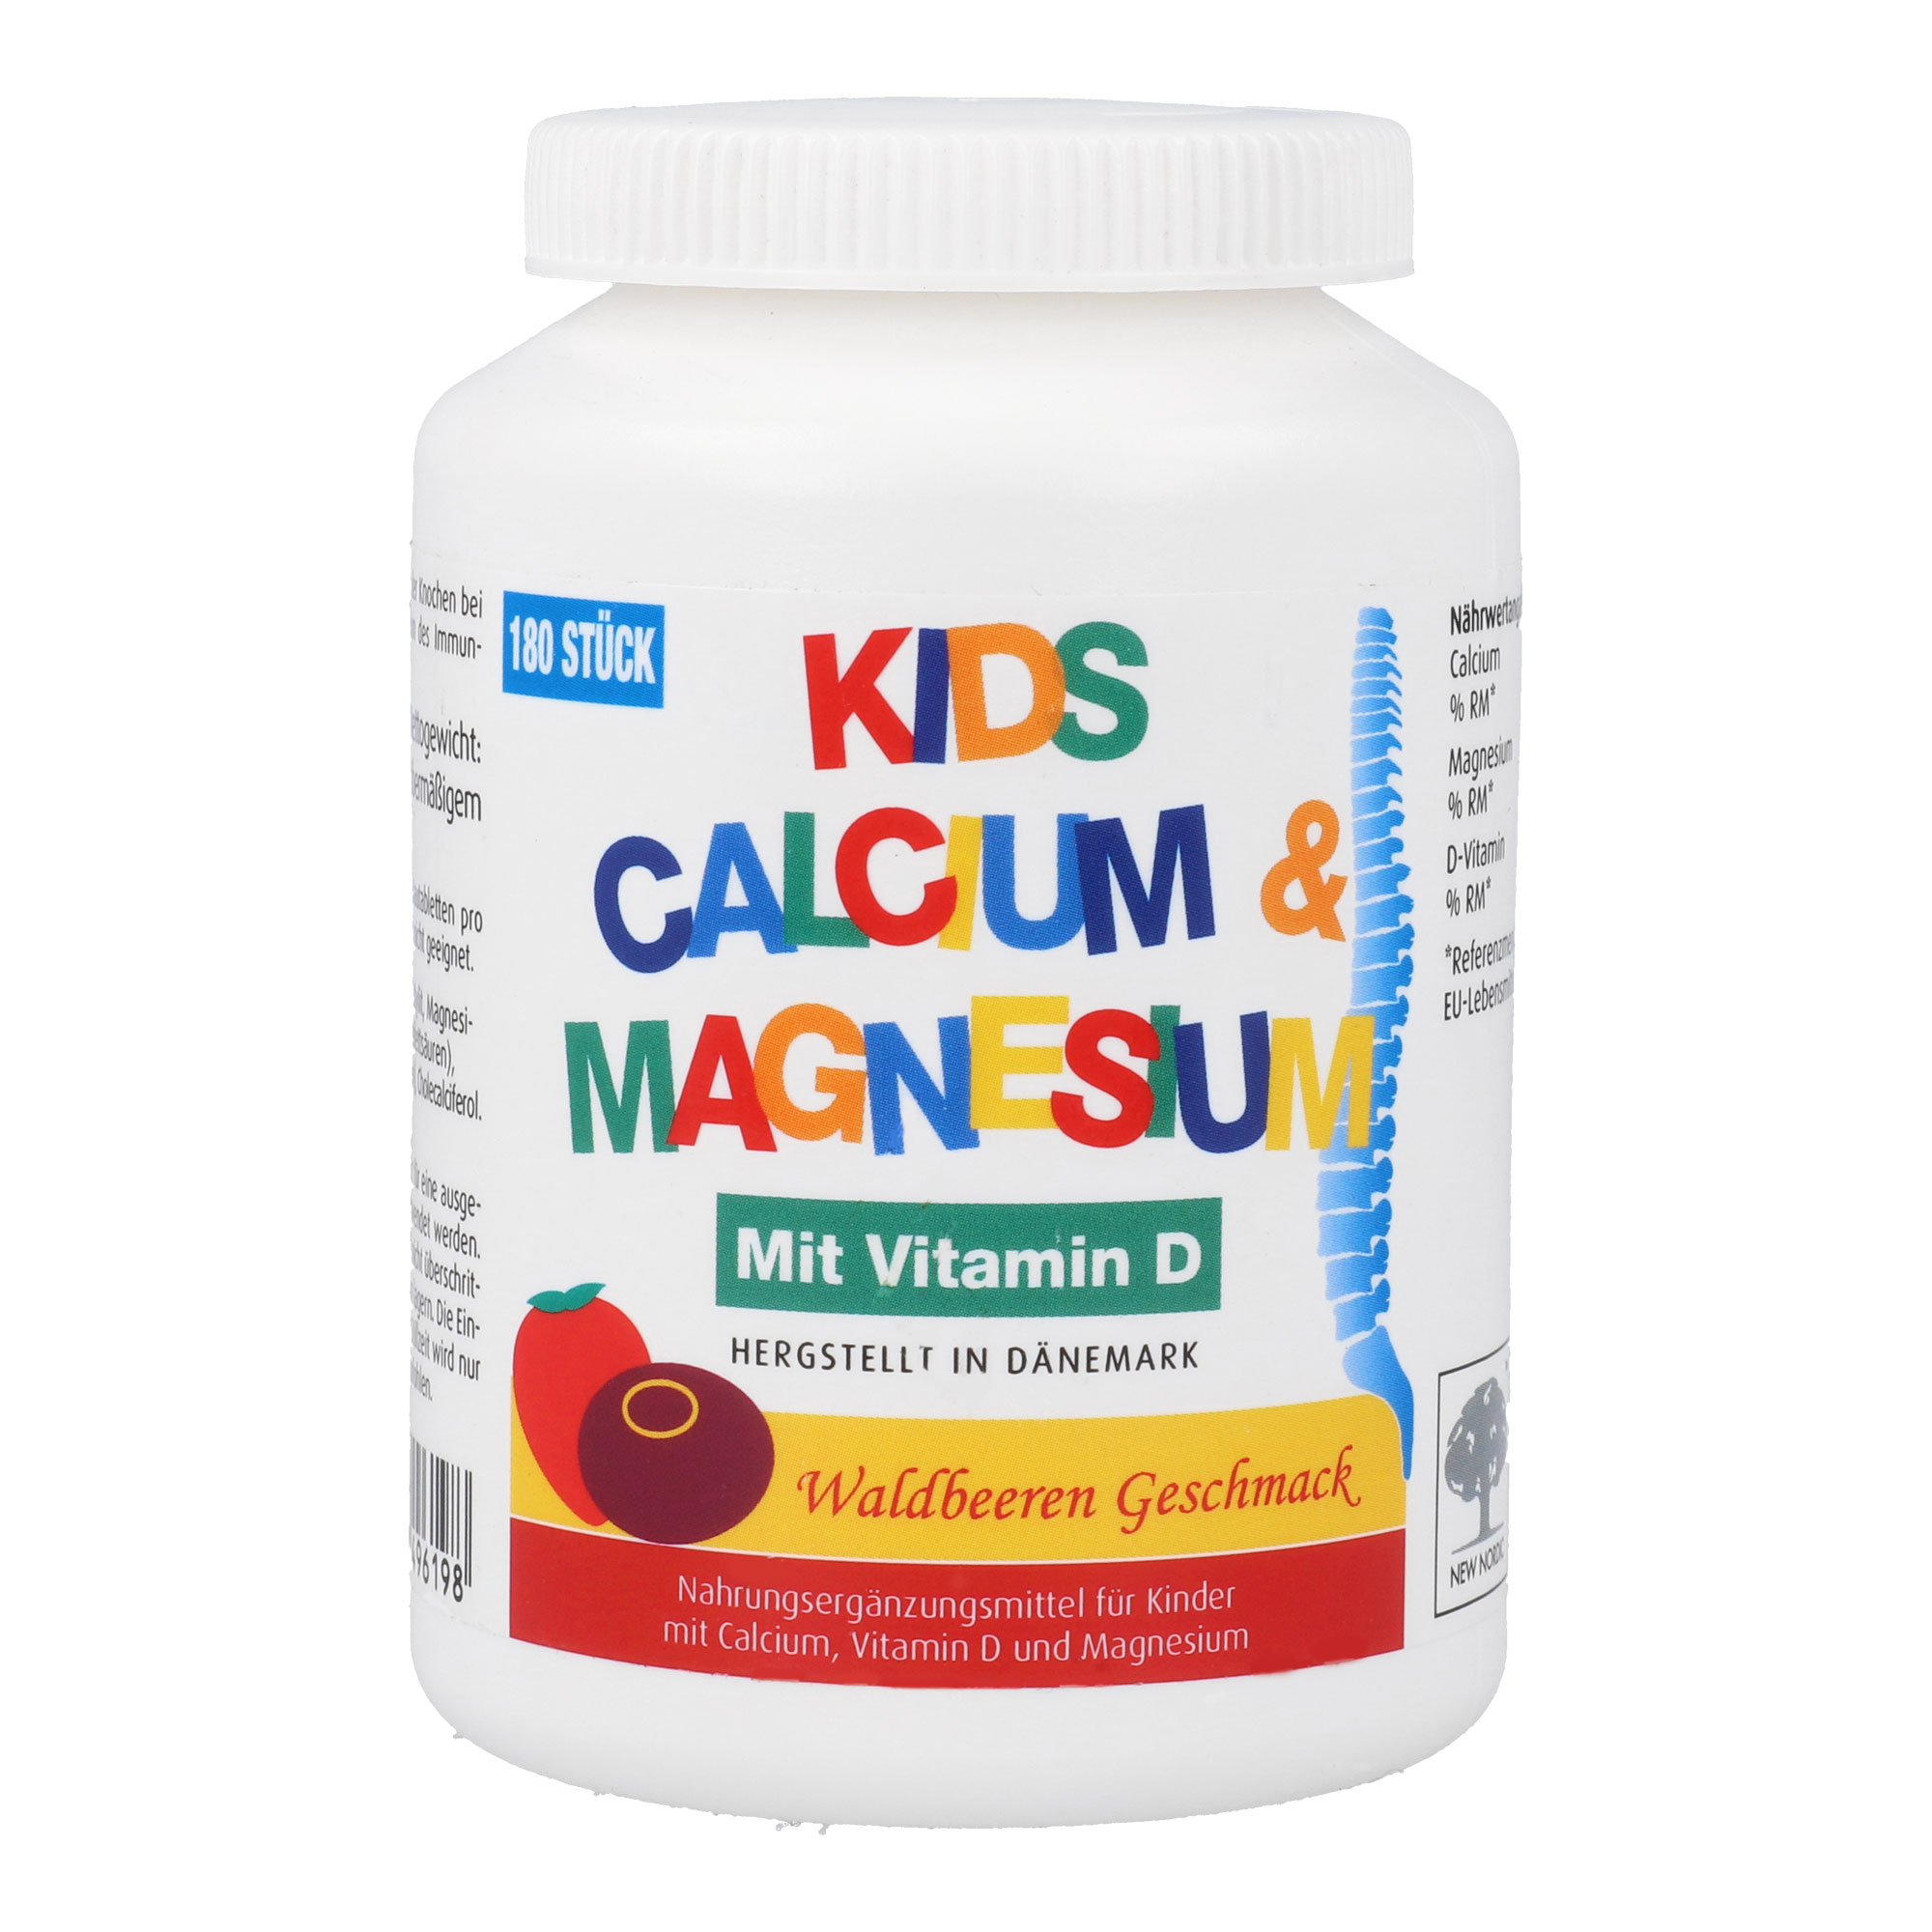 Nahrungsergänzungsmittel mit Magnesium. Ergänzt die Calcium- und Magnesiumzufuhr.